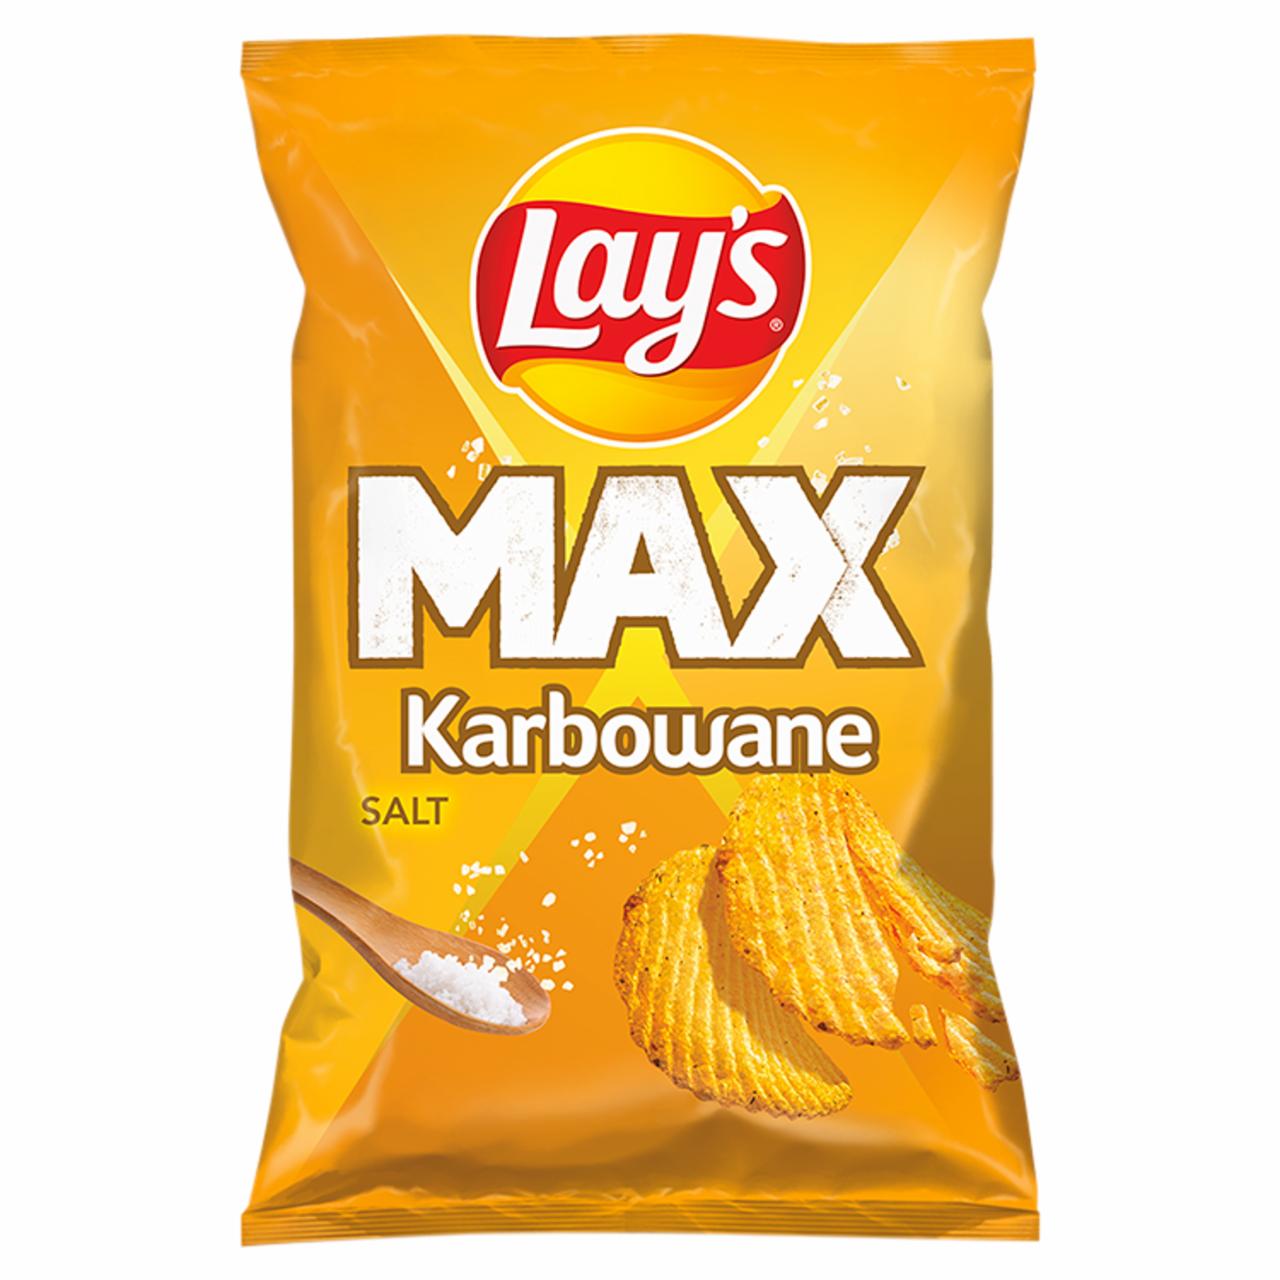 Zdjęcia - Lay's Max Chipsy ziemniaczane karbowane solone 120 g